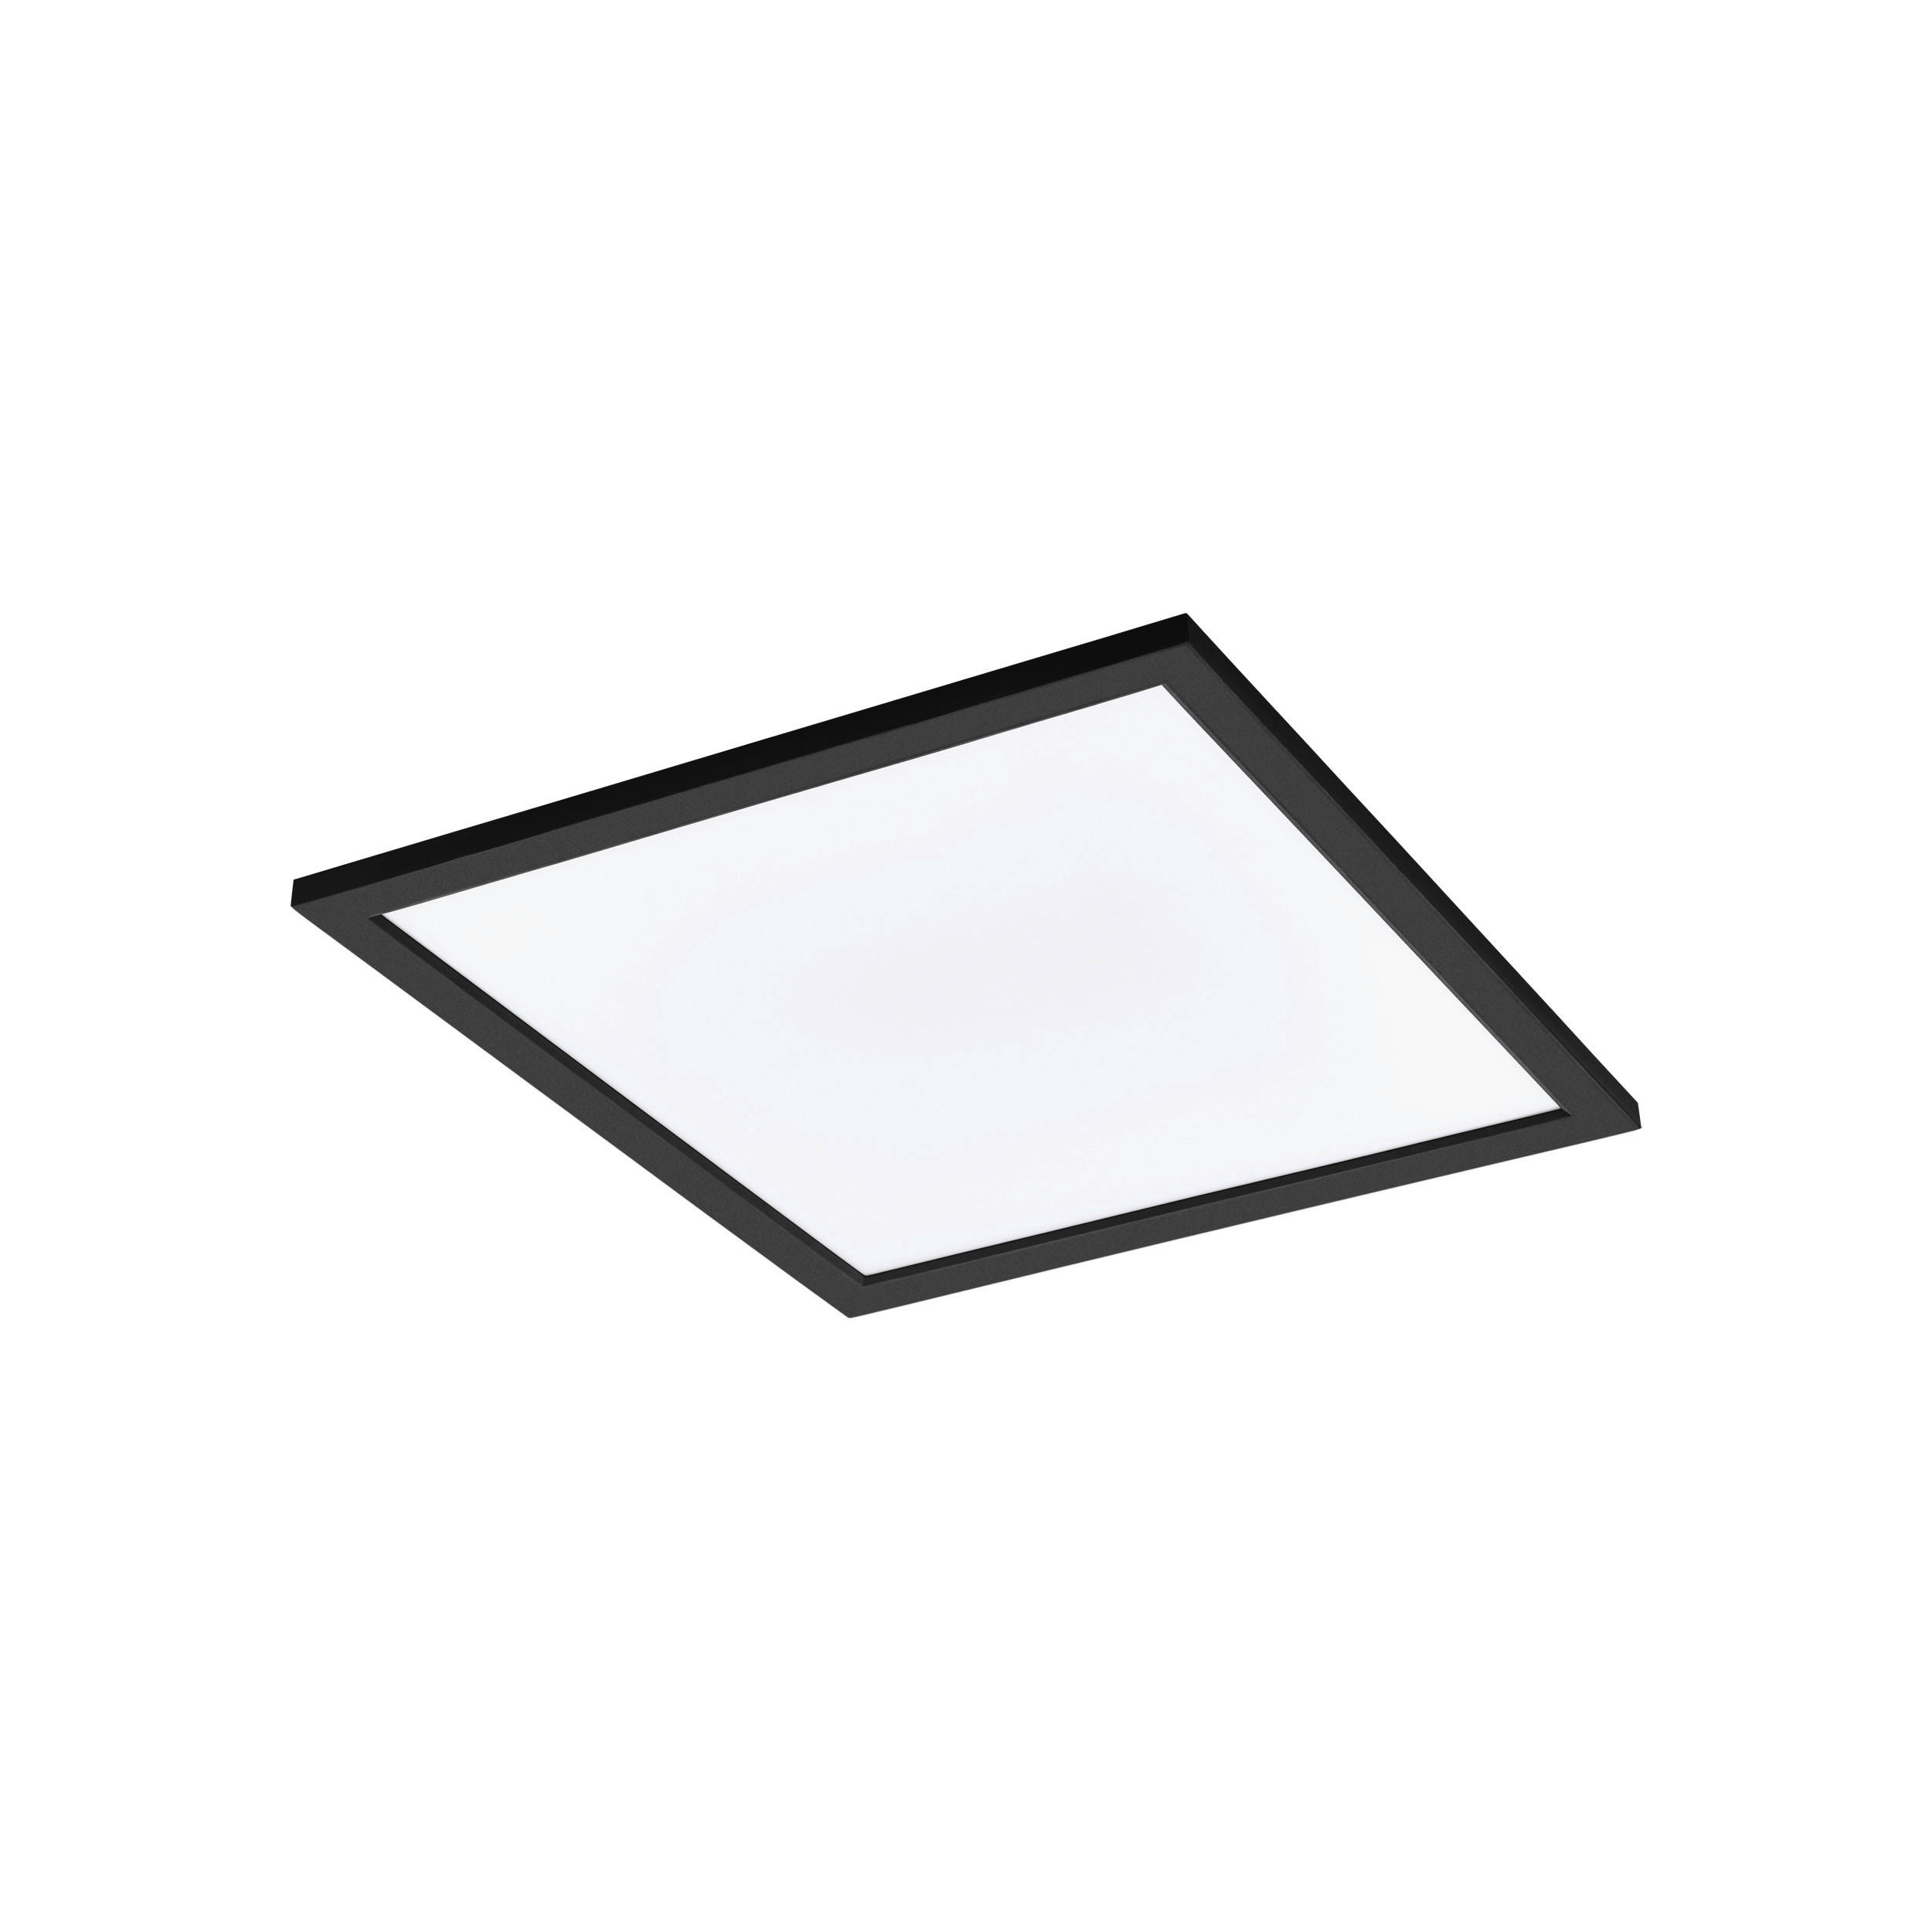 LED-DECKENLEUCHTE 45/45/5 cm    - Schwarz/Weiß, Design, Kunststoff/Metall (45/45/5cm) - Eglo